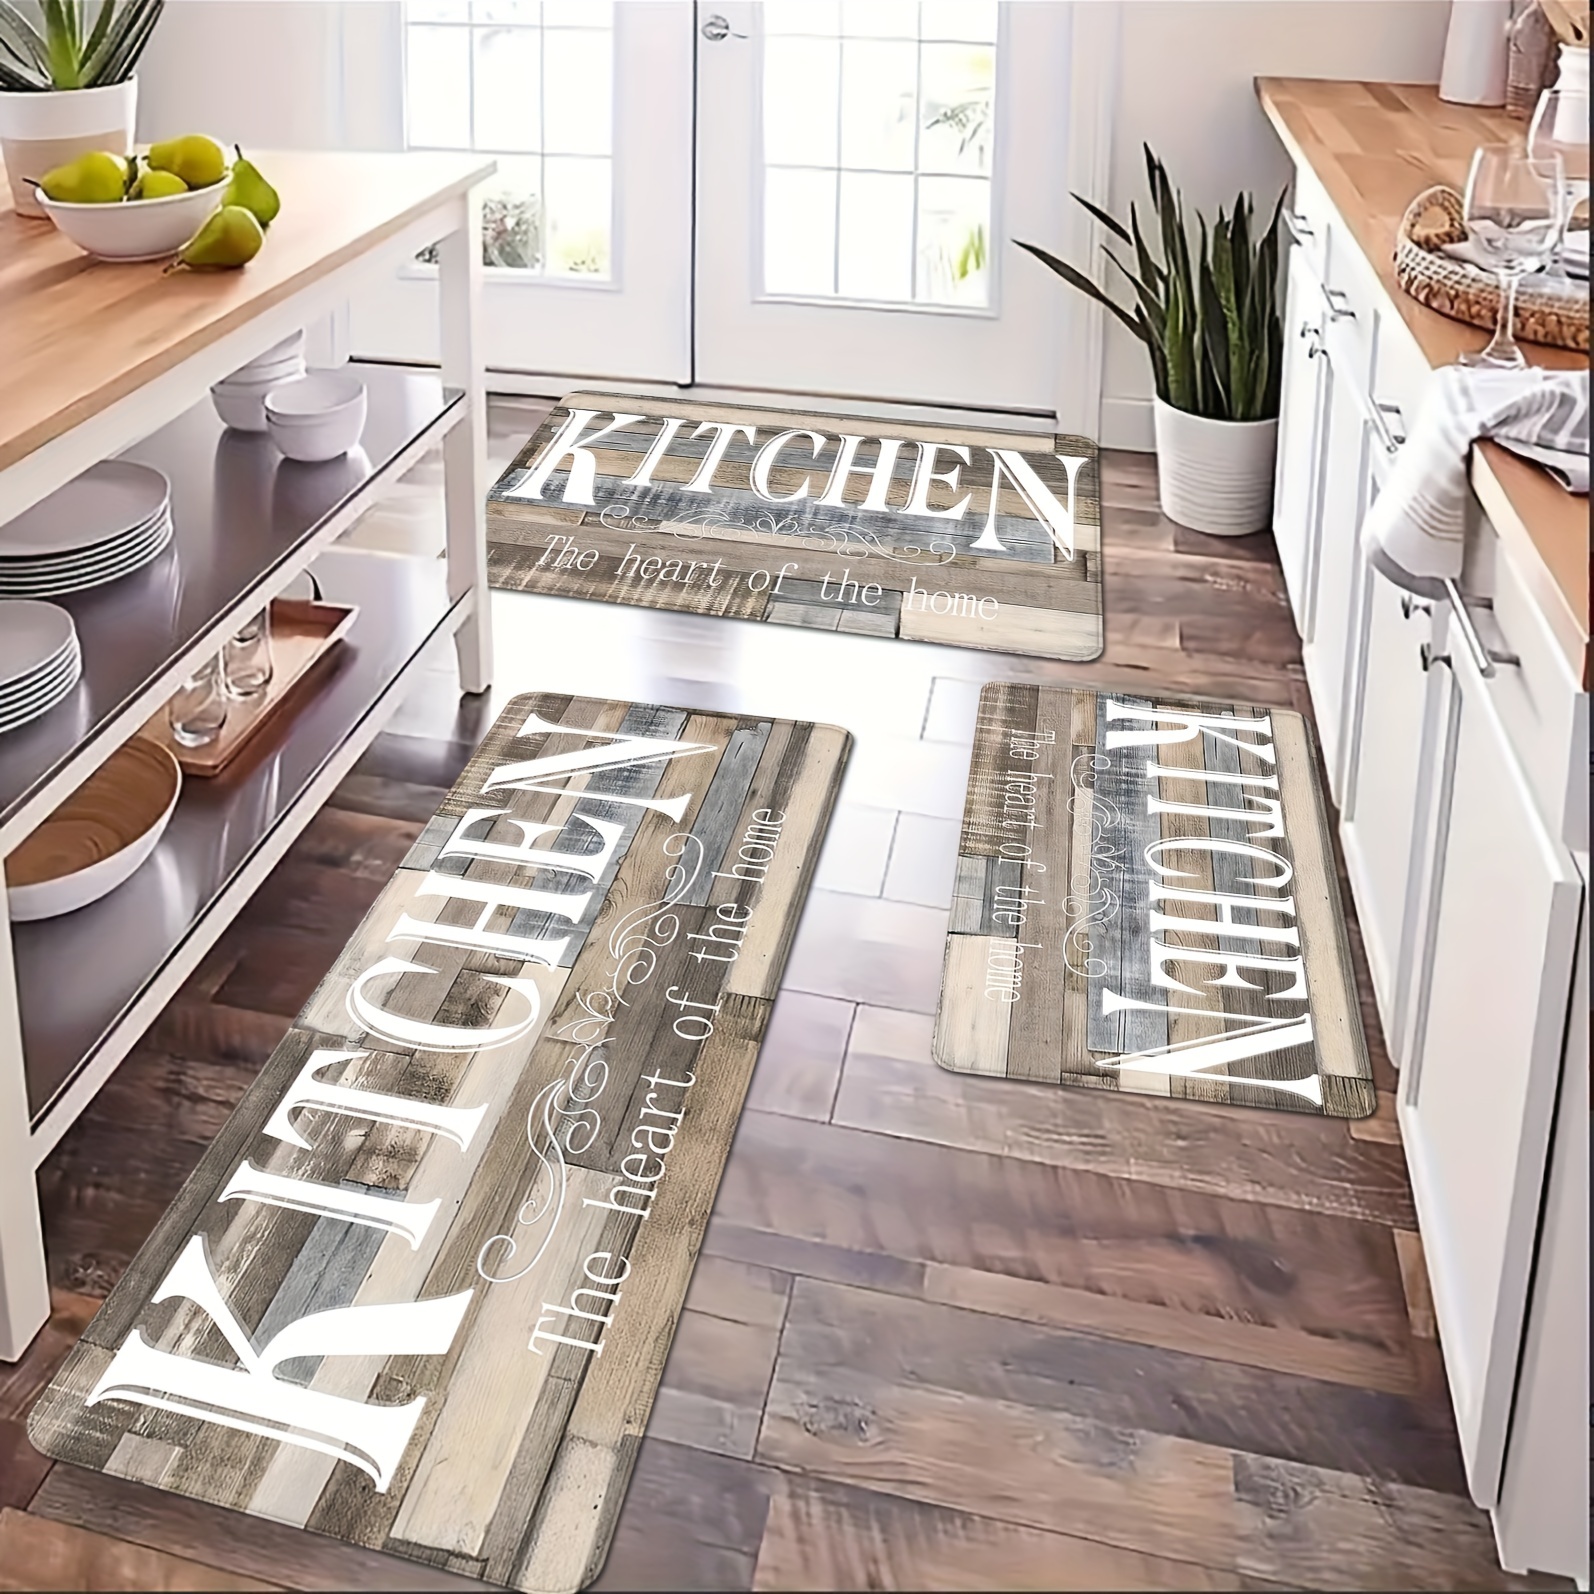 Trendy Wholesale waterproof bathroom floor mats for Decorating the